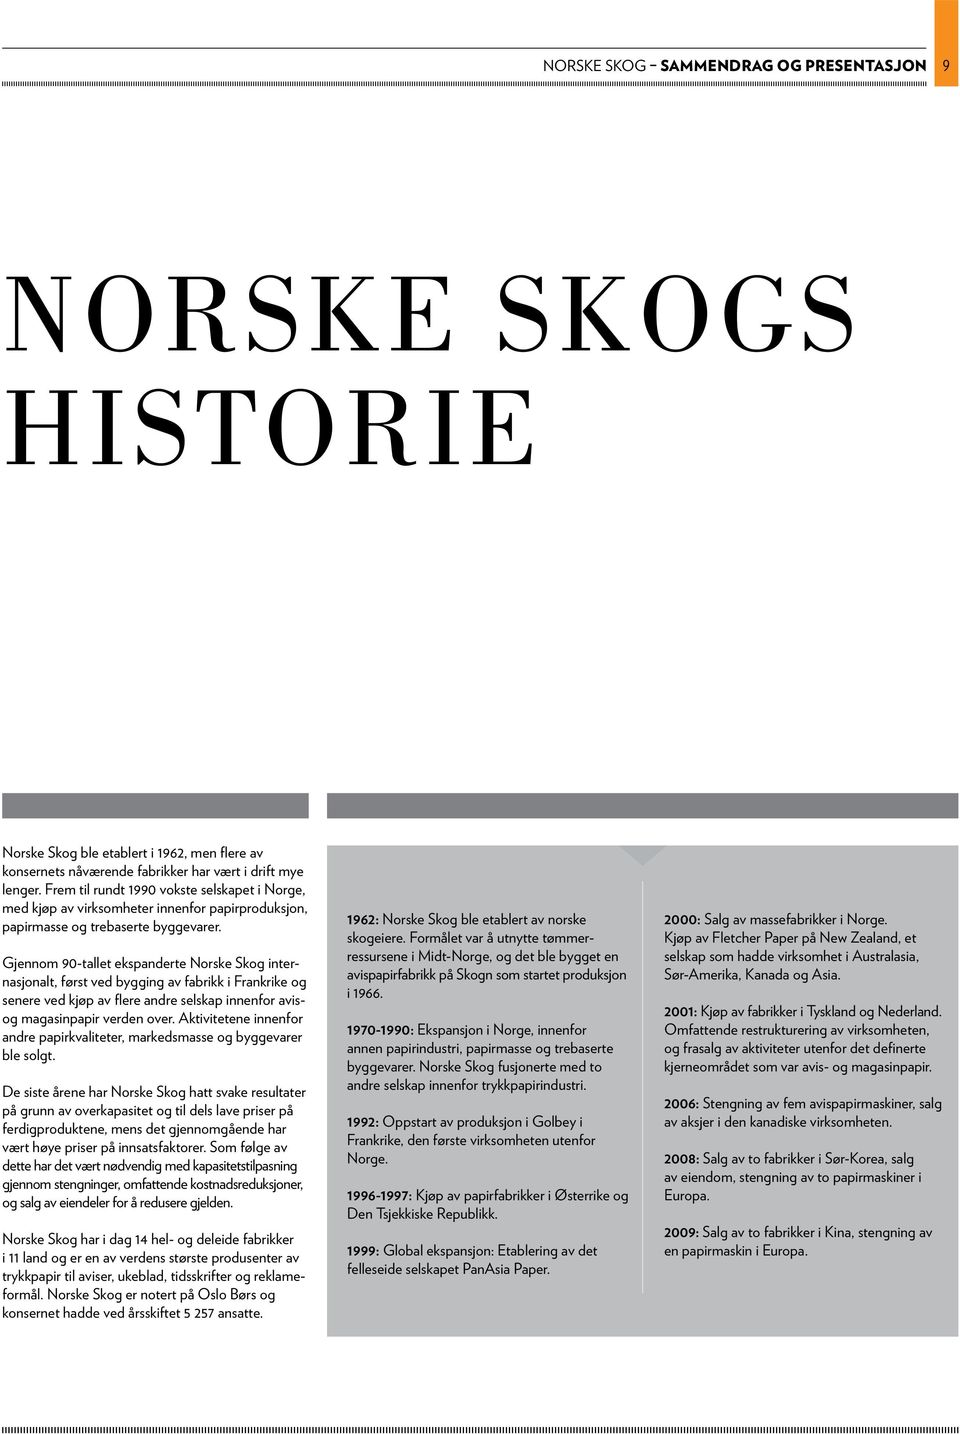 gjennom 90-tallet ekspanderte norske skog internasjonalt, først ved bygging av fabrikk i Frankrike og senere ved kjøp av flere andre selskap innenfor avisog magasinpapir verden over.